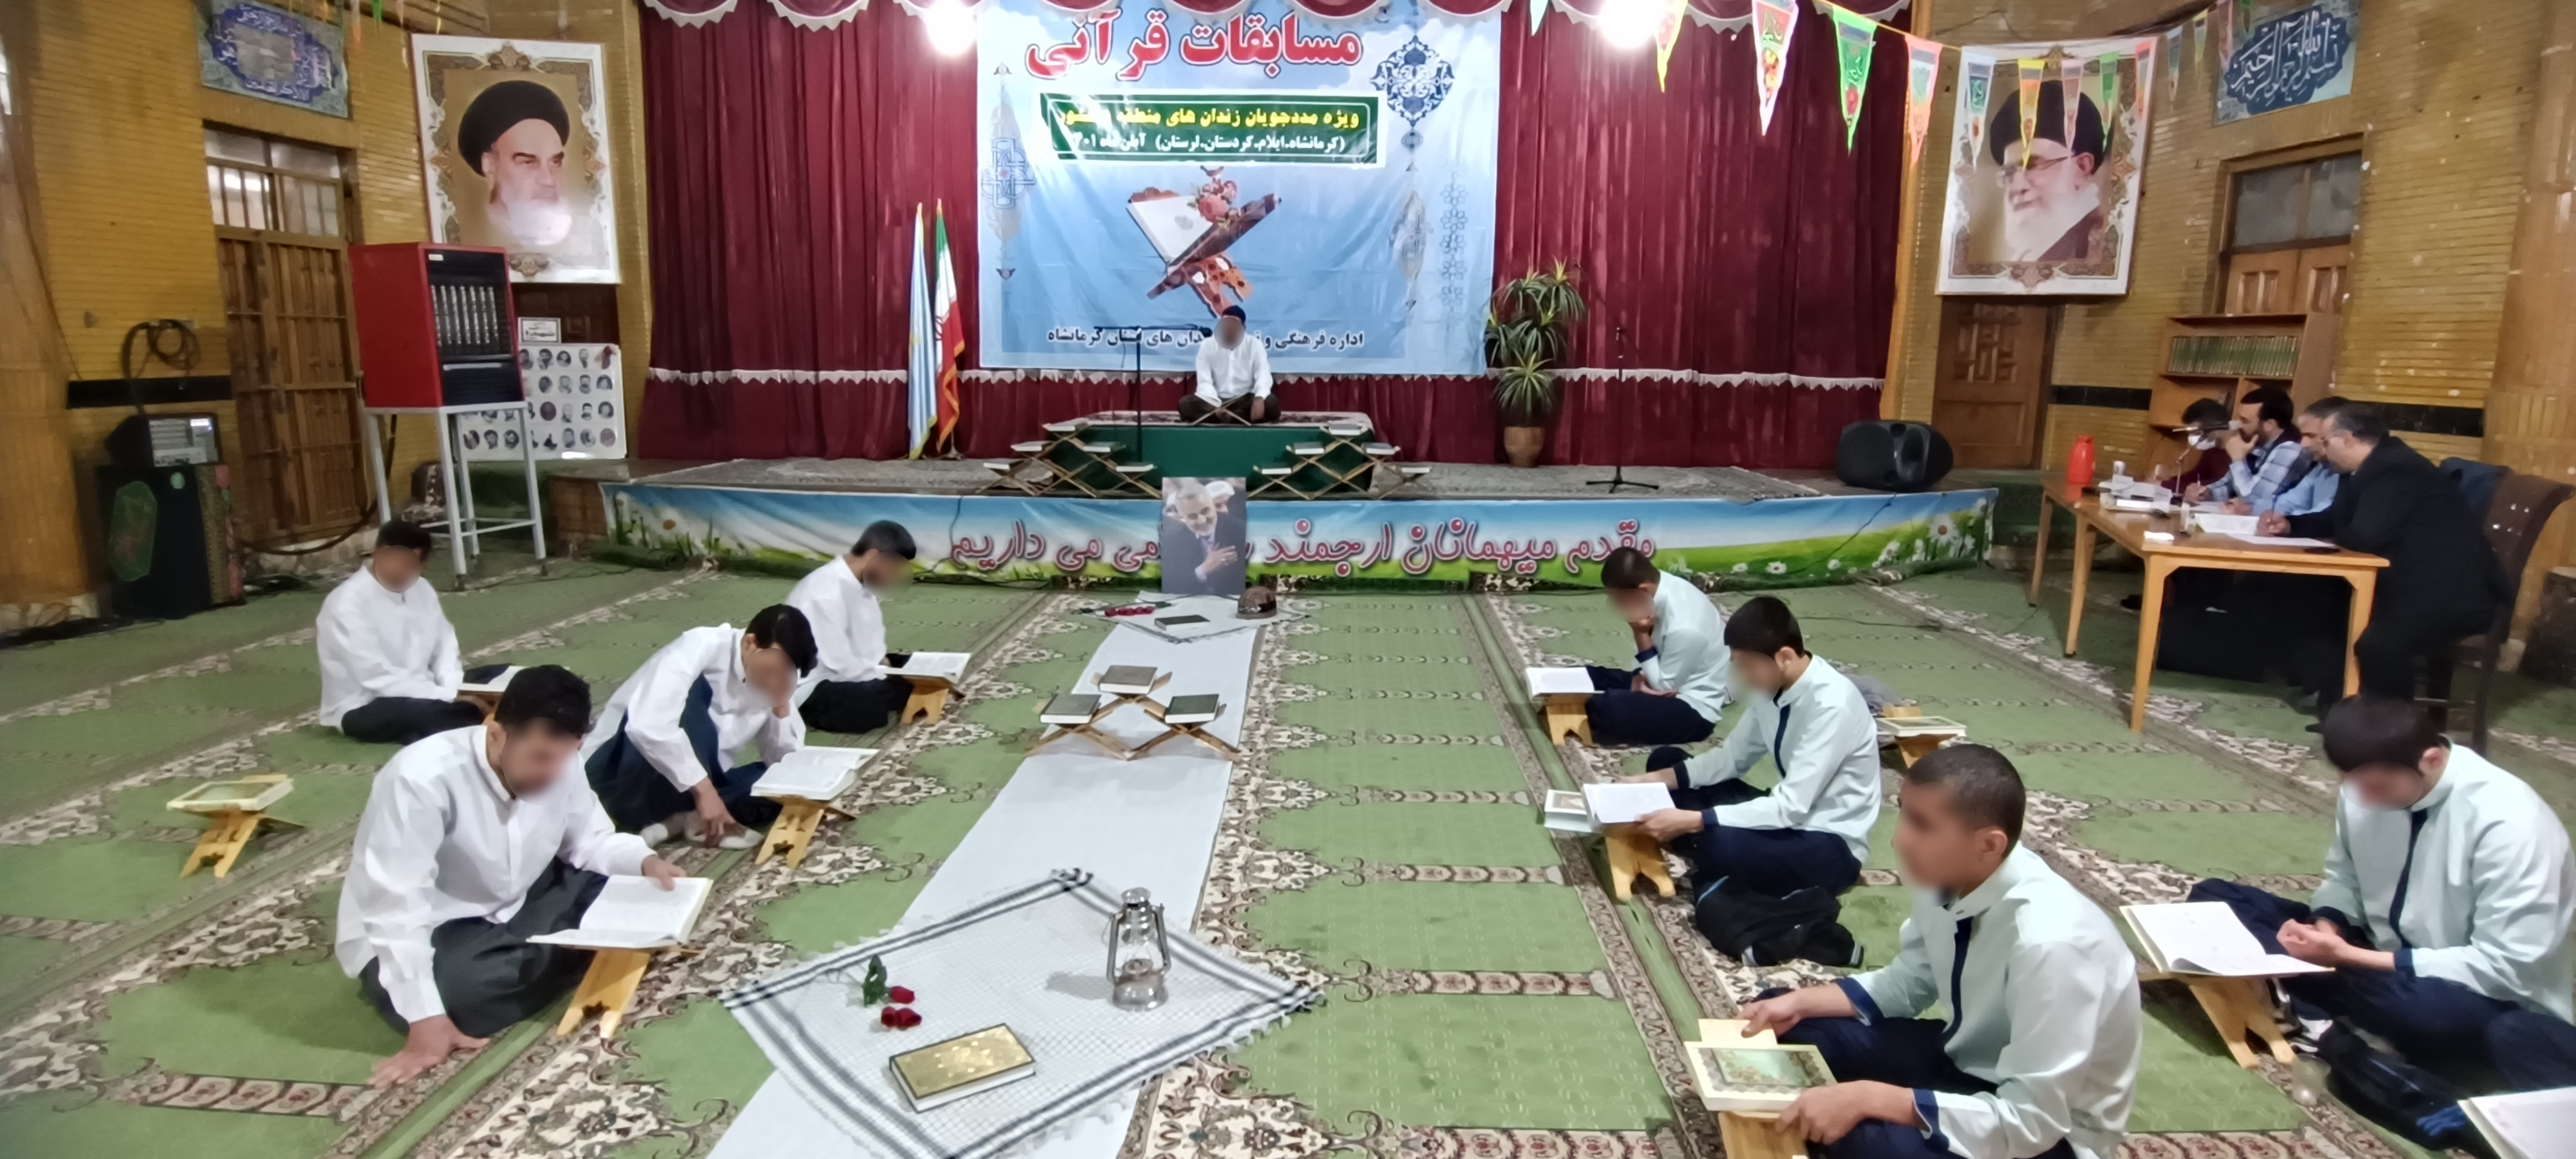 دومین دوره مسابقات قرآن کریم ویژه مددجویان منطقه ۵ کشوری در زندان مرکزی کرمانشاه نیز برگزار شد